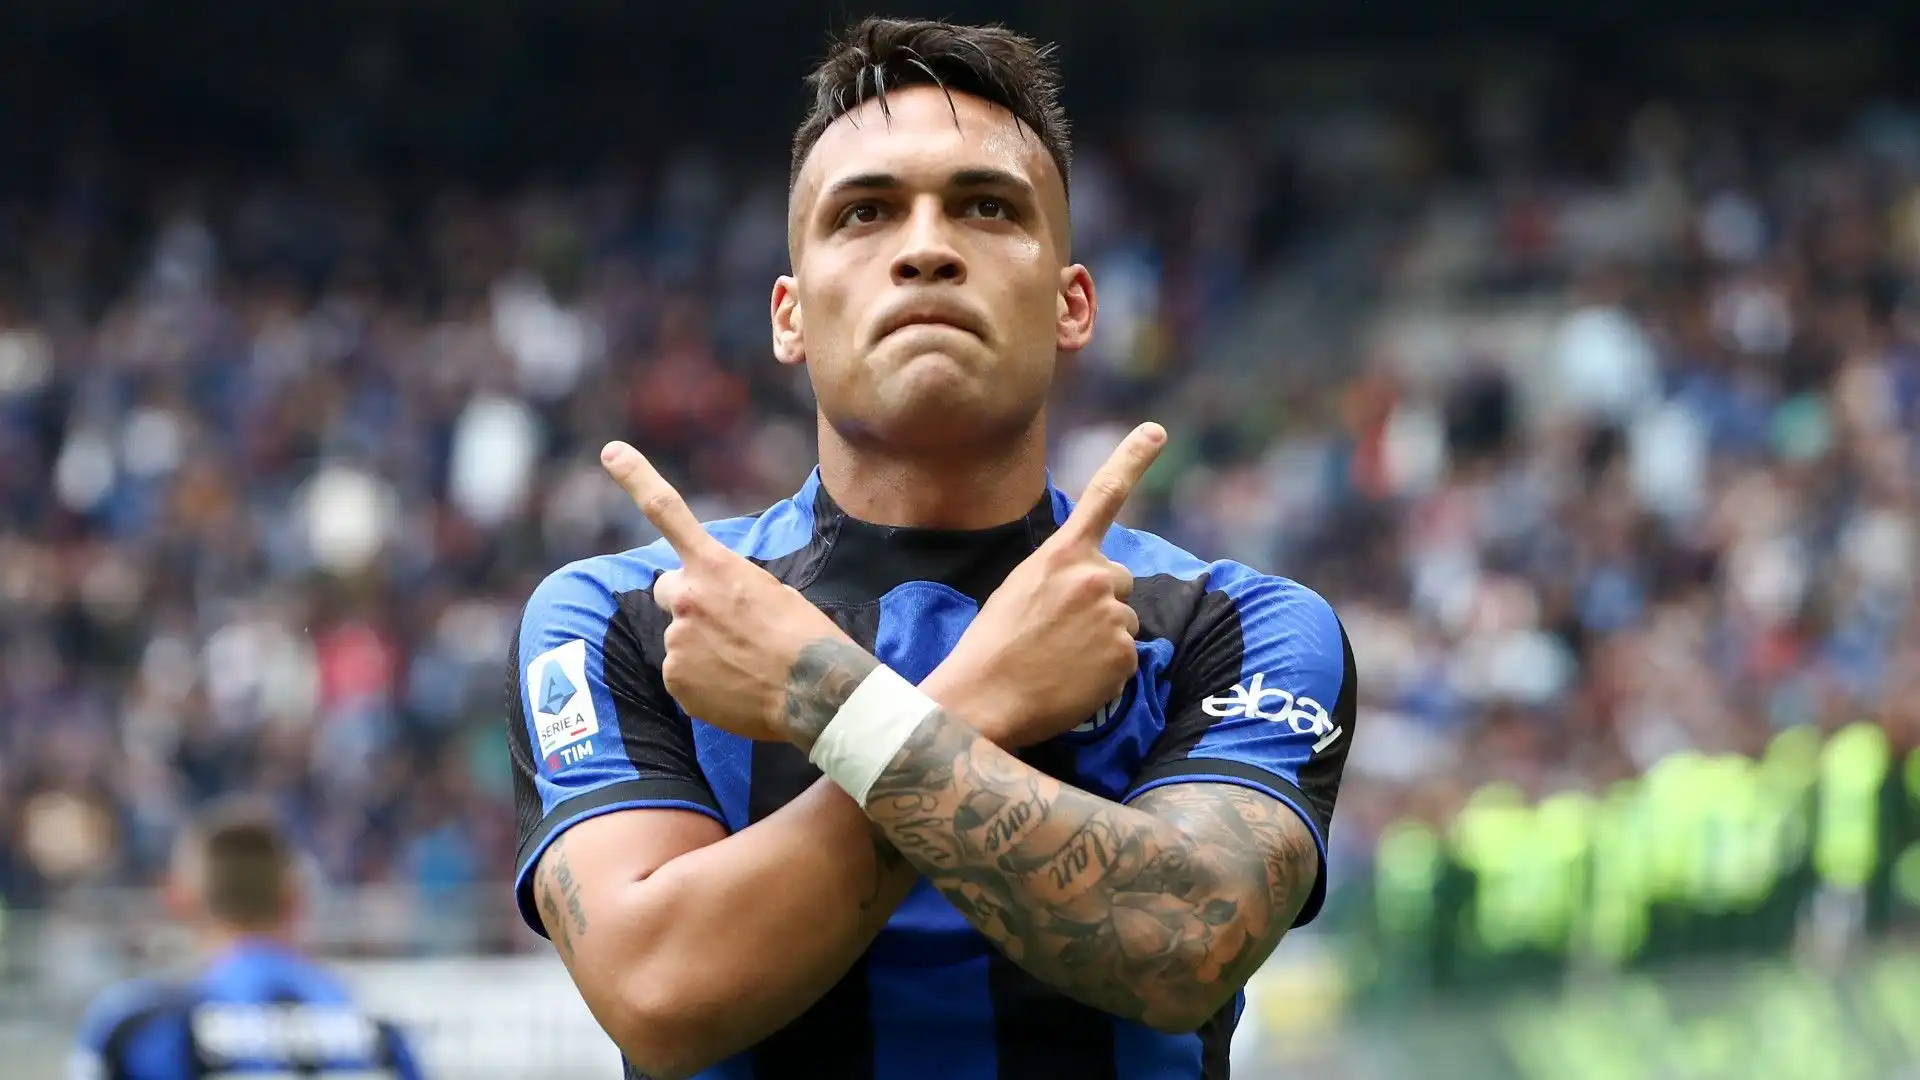 7- Lautaro Martinez, Inter